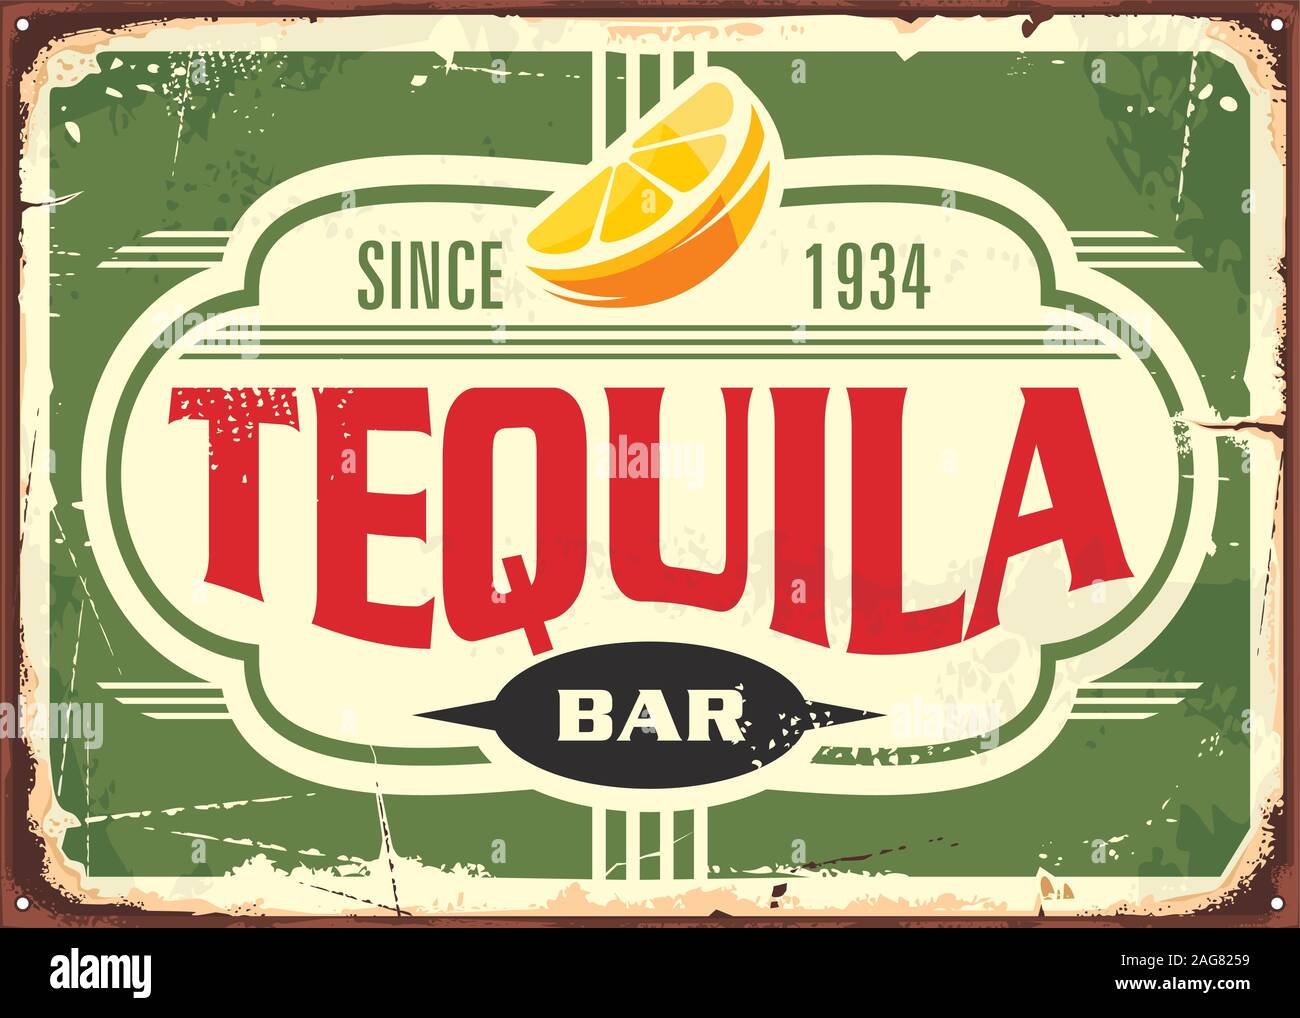 Tequila bar vintage tin sign pour boire de l'alcool traditionnel Mexicain. La publicité promotionnelle avec typographie unique forme et tranche de citron. Illustration de Vecteur